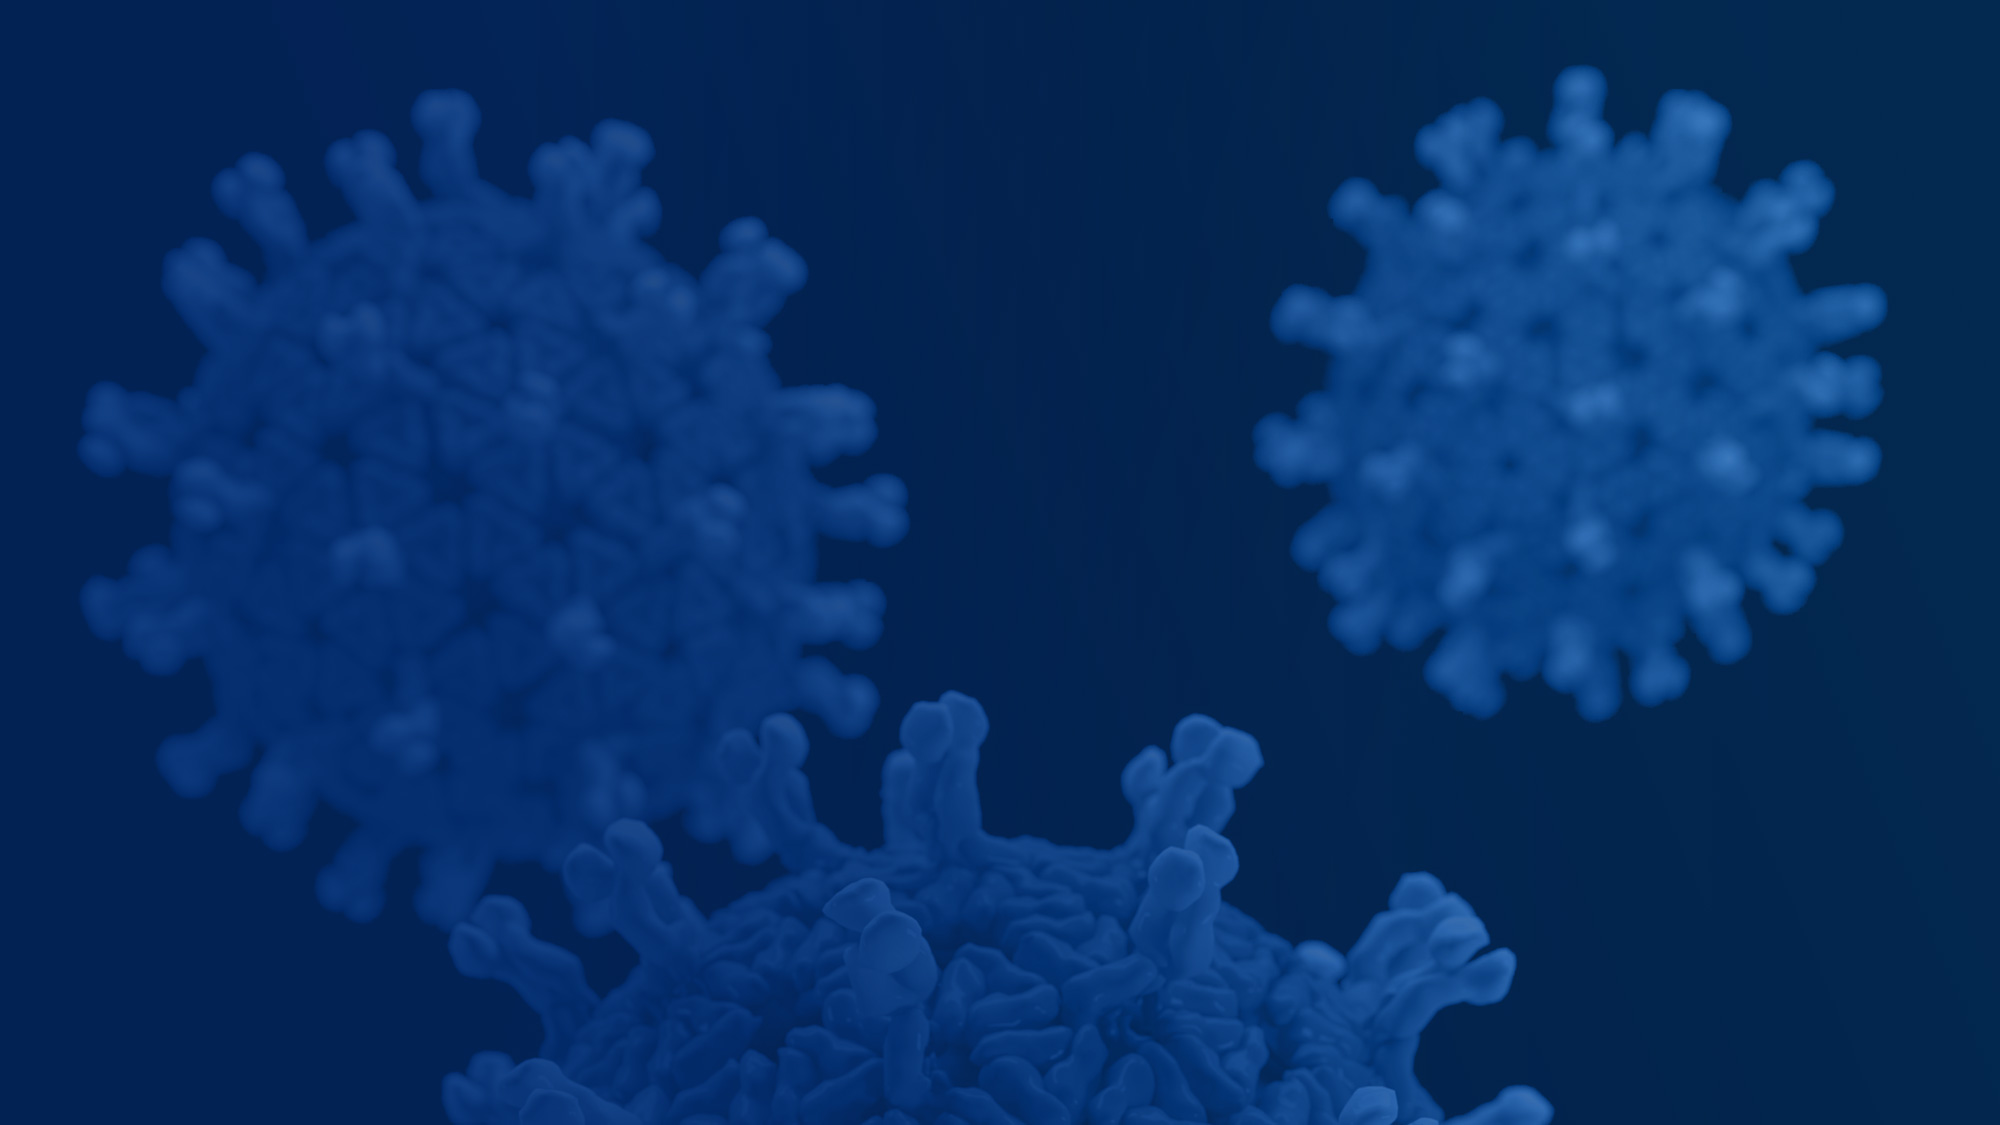 Rotavirus virons - Blue